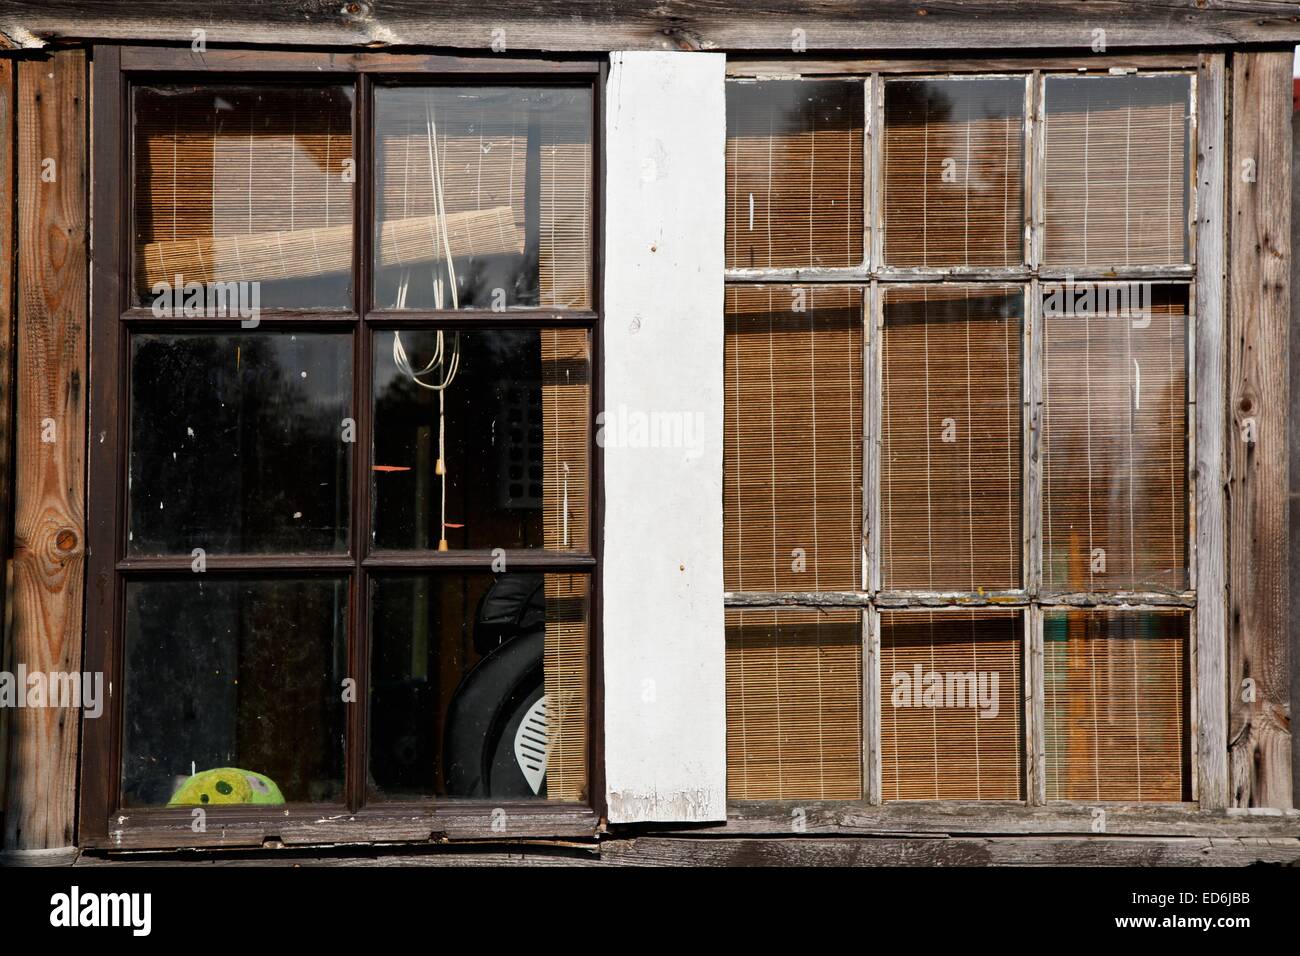 Una vecchia finestra in legno telaio con uno scorcio di un uccello arrabbiato toy visto attraverso la finestra Foto Stock